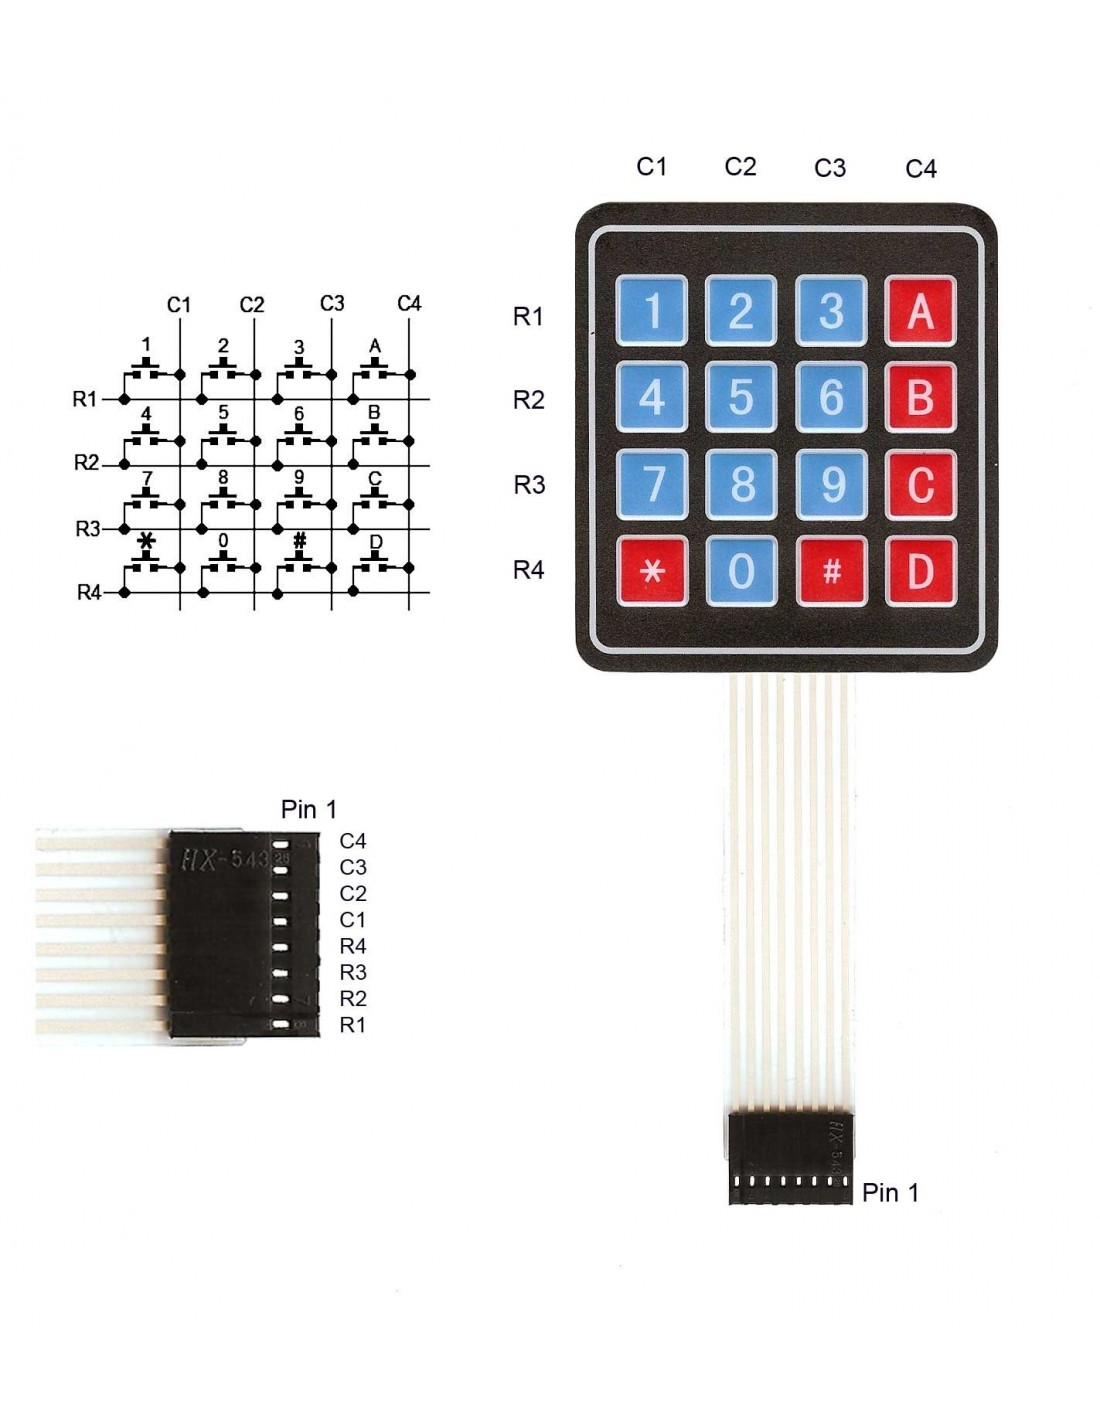 4x4 Matrix Keypad Membrane Switch